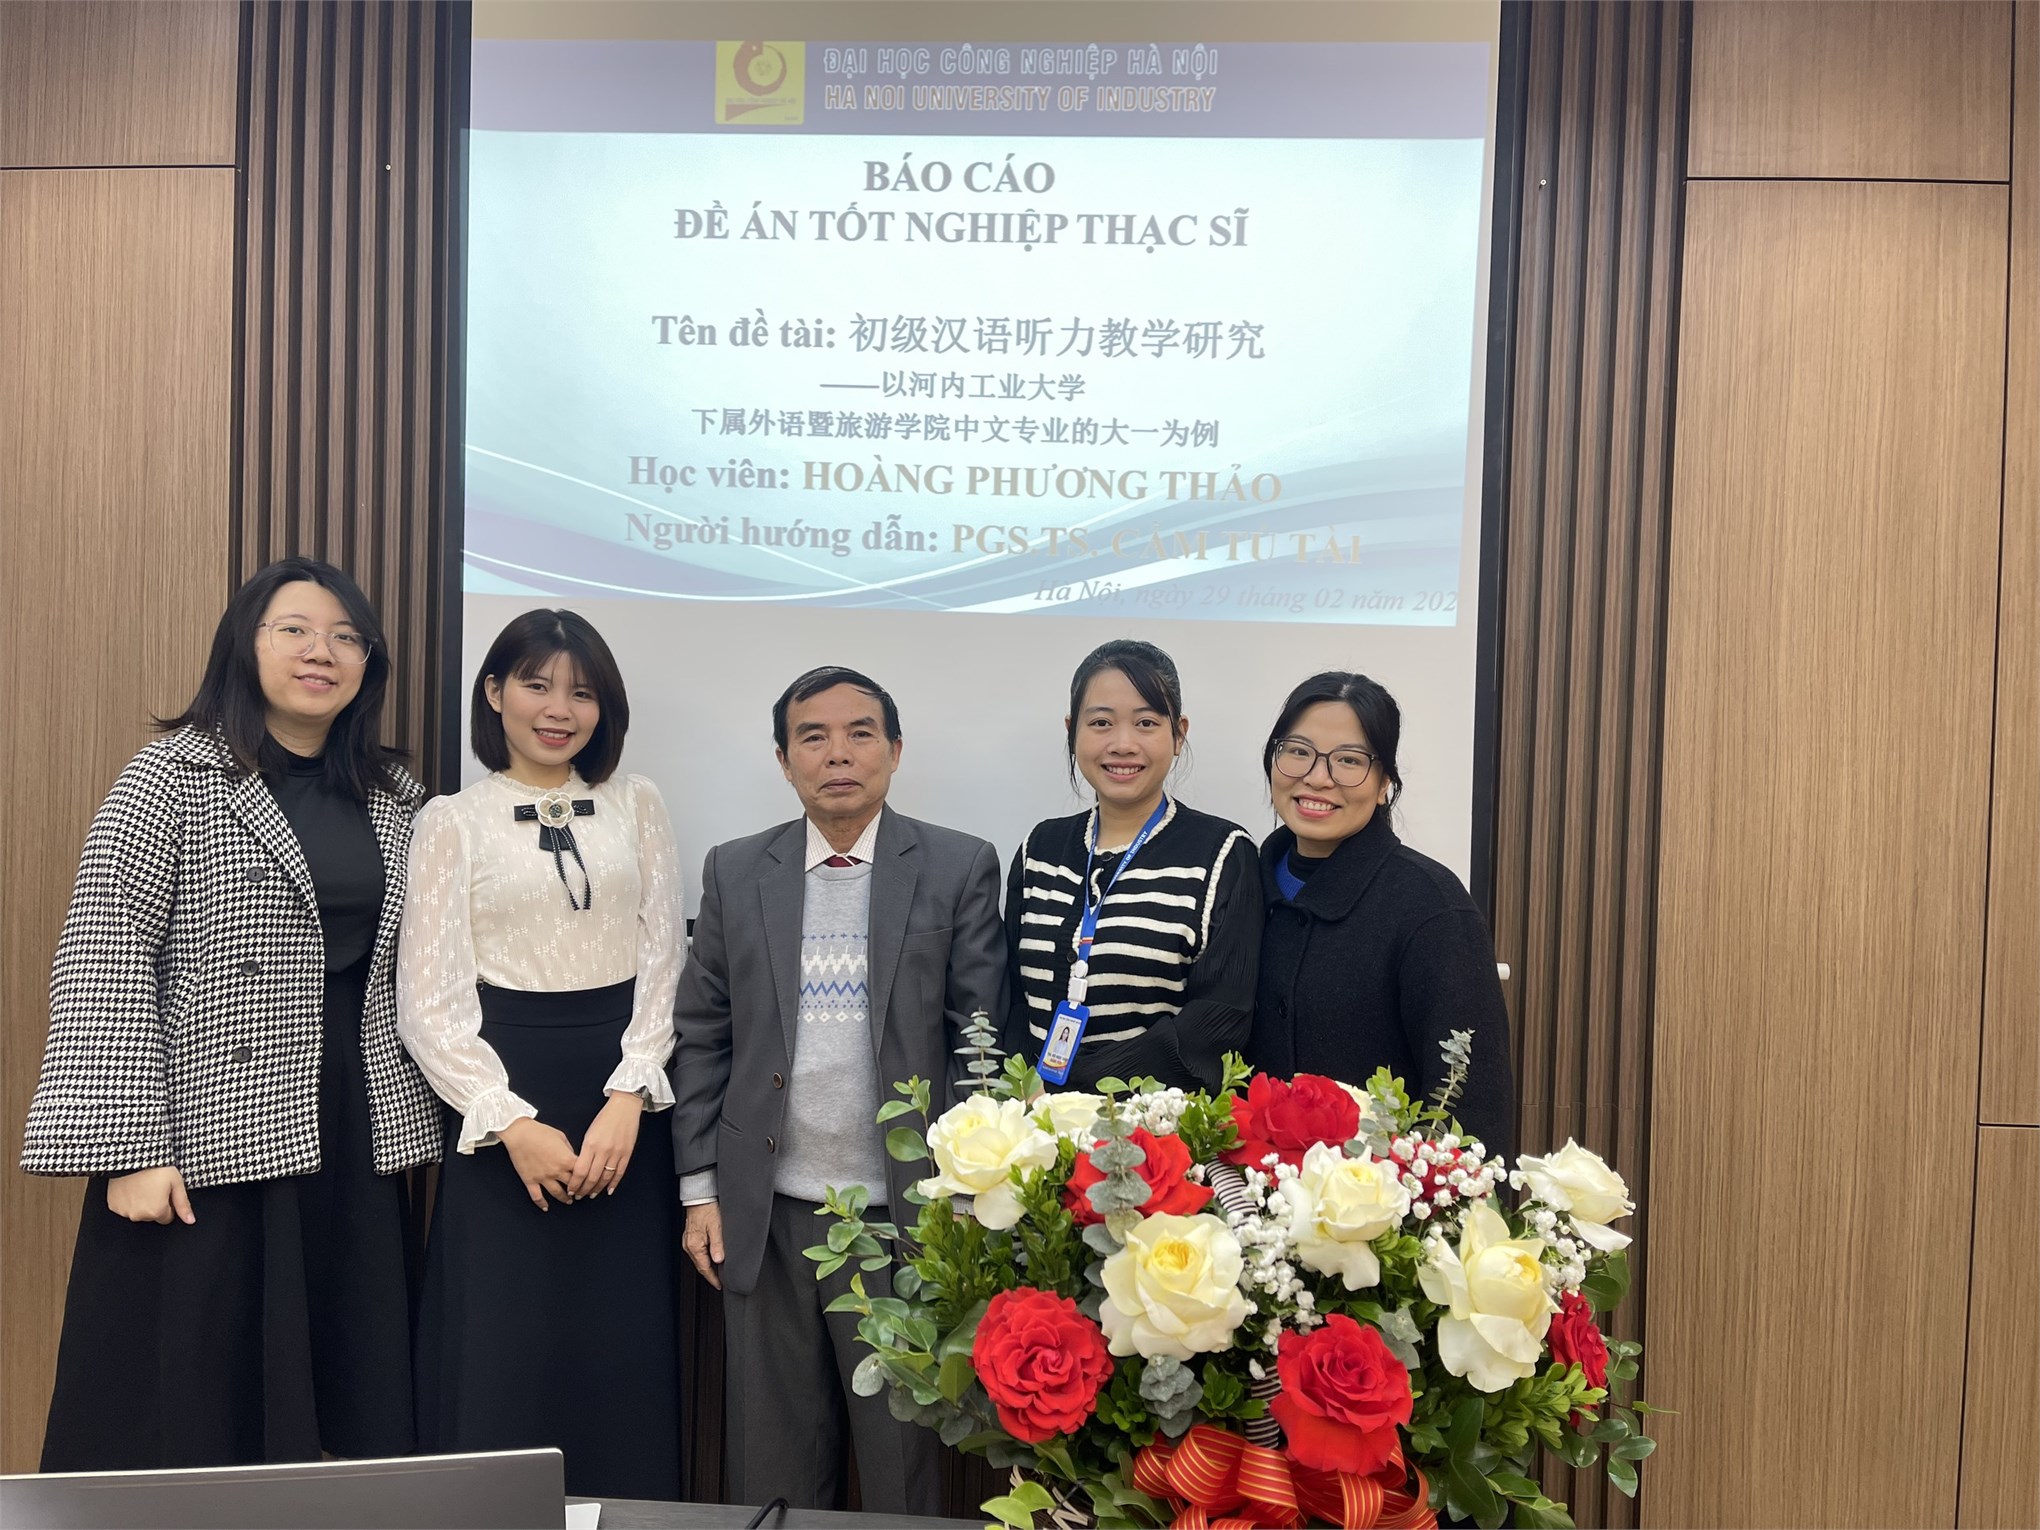 Trường Đại học Công nghiệp Hà Nội, tổ chức bảo vệ đề án tốt nghiệp thạc sĩ cho học viên cao học ngành Ngôn ngữ Trung Quốc – khóa 12 đợt 1 (niên khóa 2022-2024).